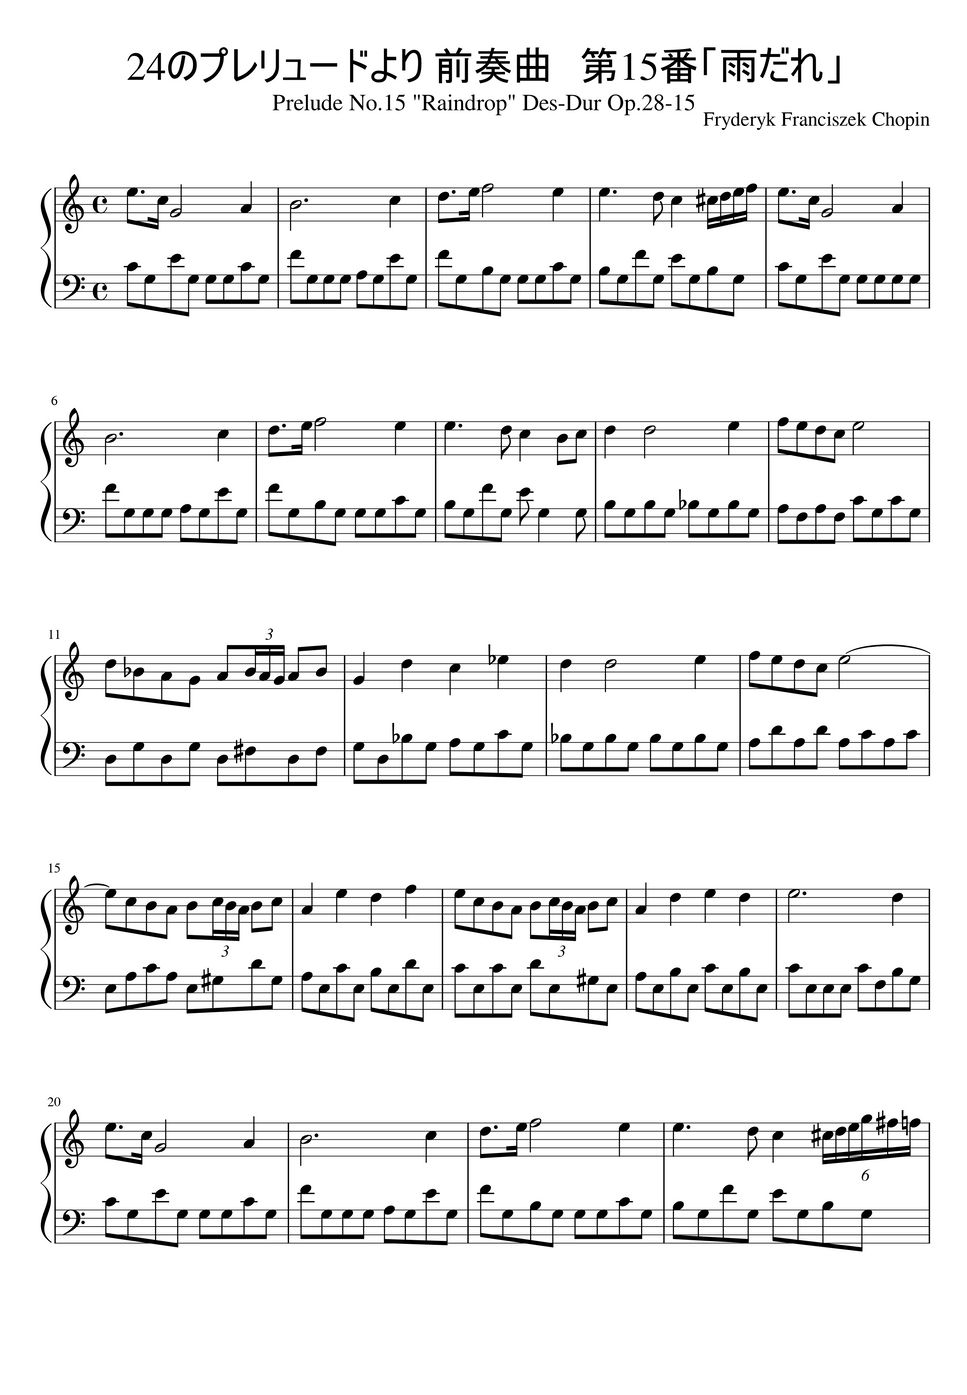 フレデリック・ショパン - 24のプレリュードより 前奏曲 第15番「雨だれ」 (かんたんショパン) by MKPON